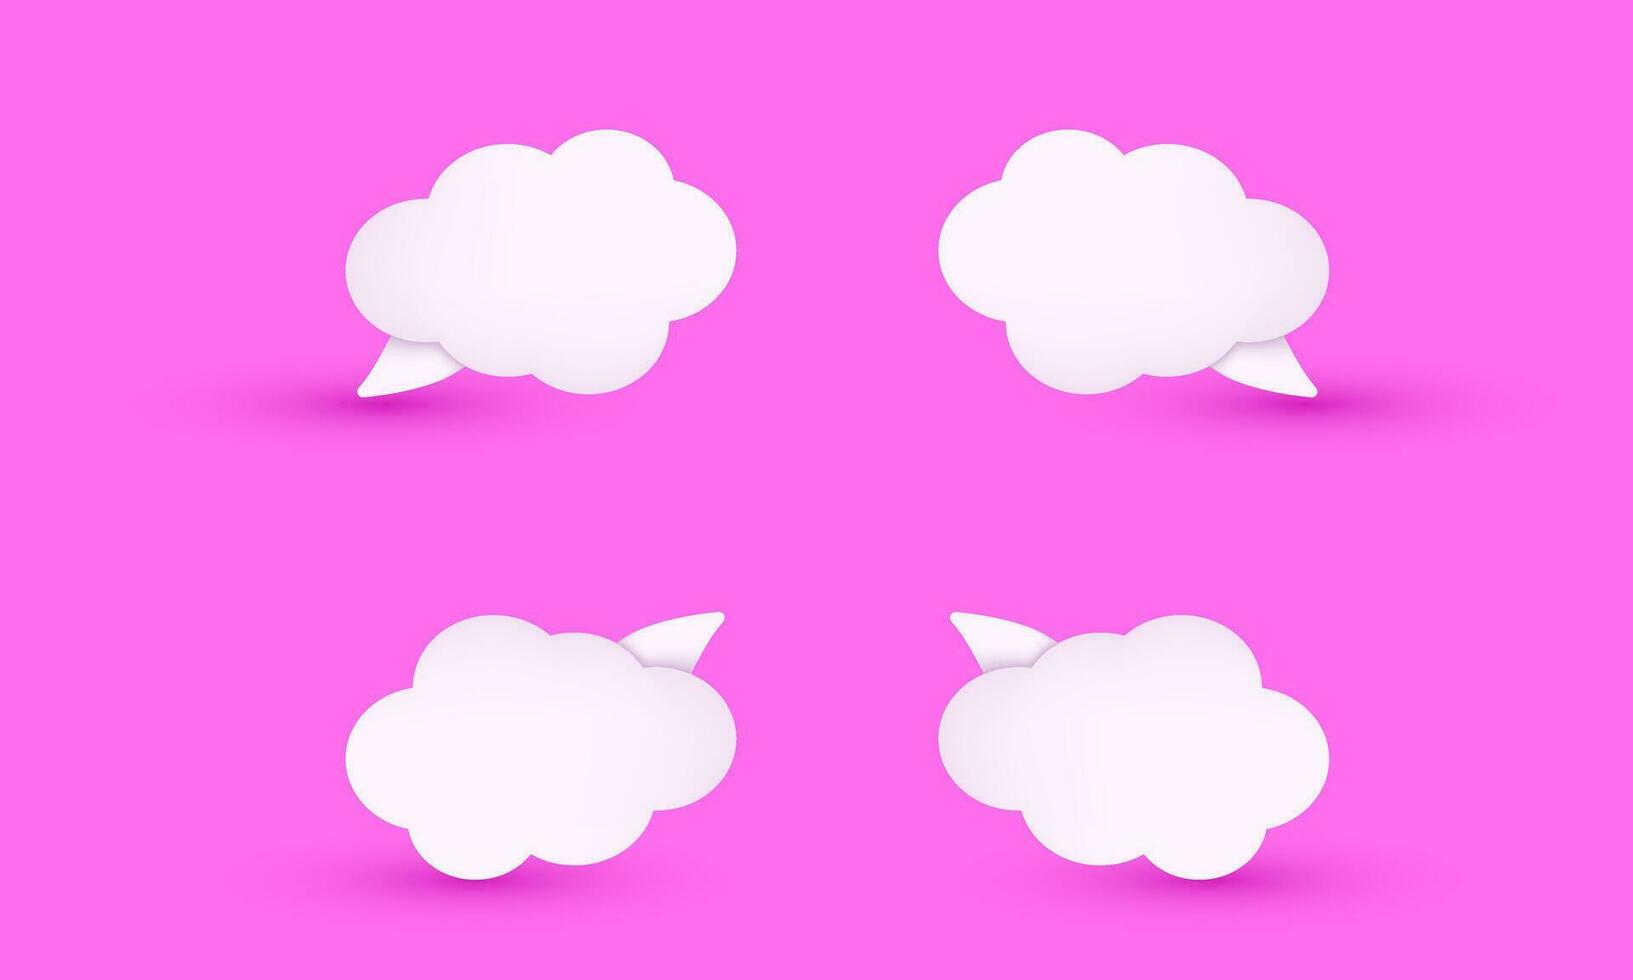 moderno 3d realista Rosa fofa conjunto coleção nuvem discurso bolha ilustração na moda ícone estilo objeto símbolos isolado em fundo vetor